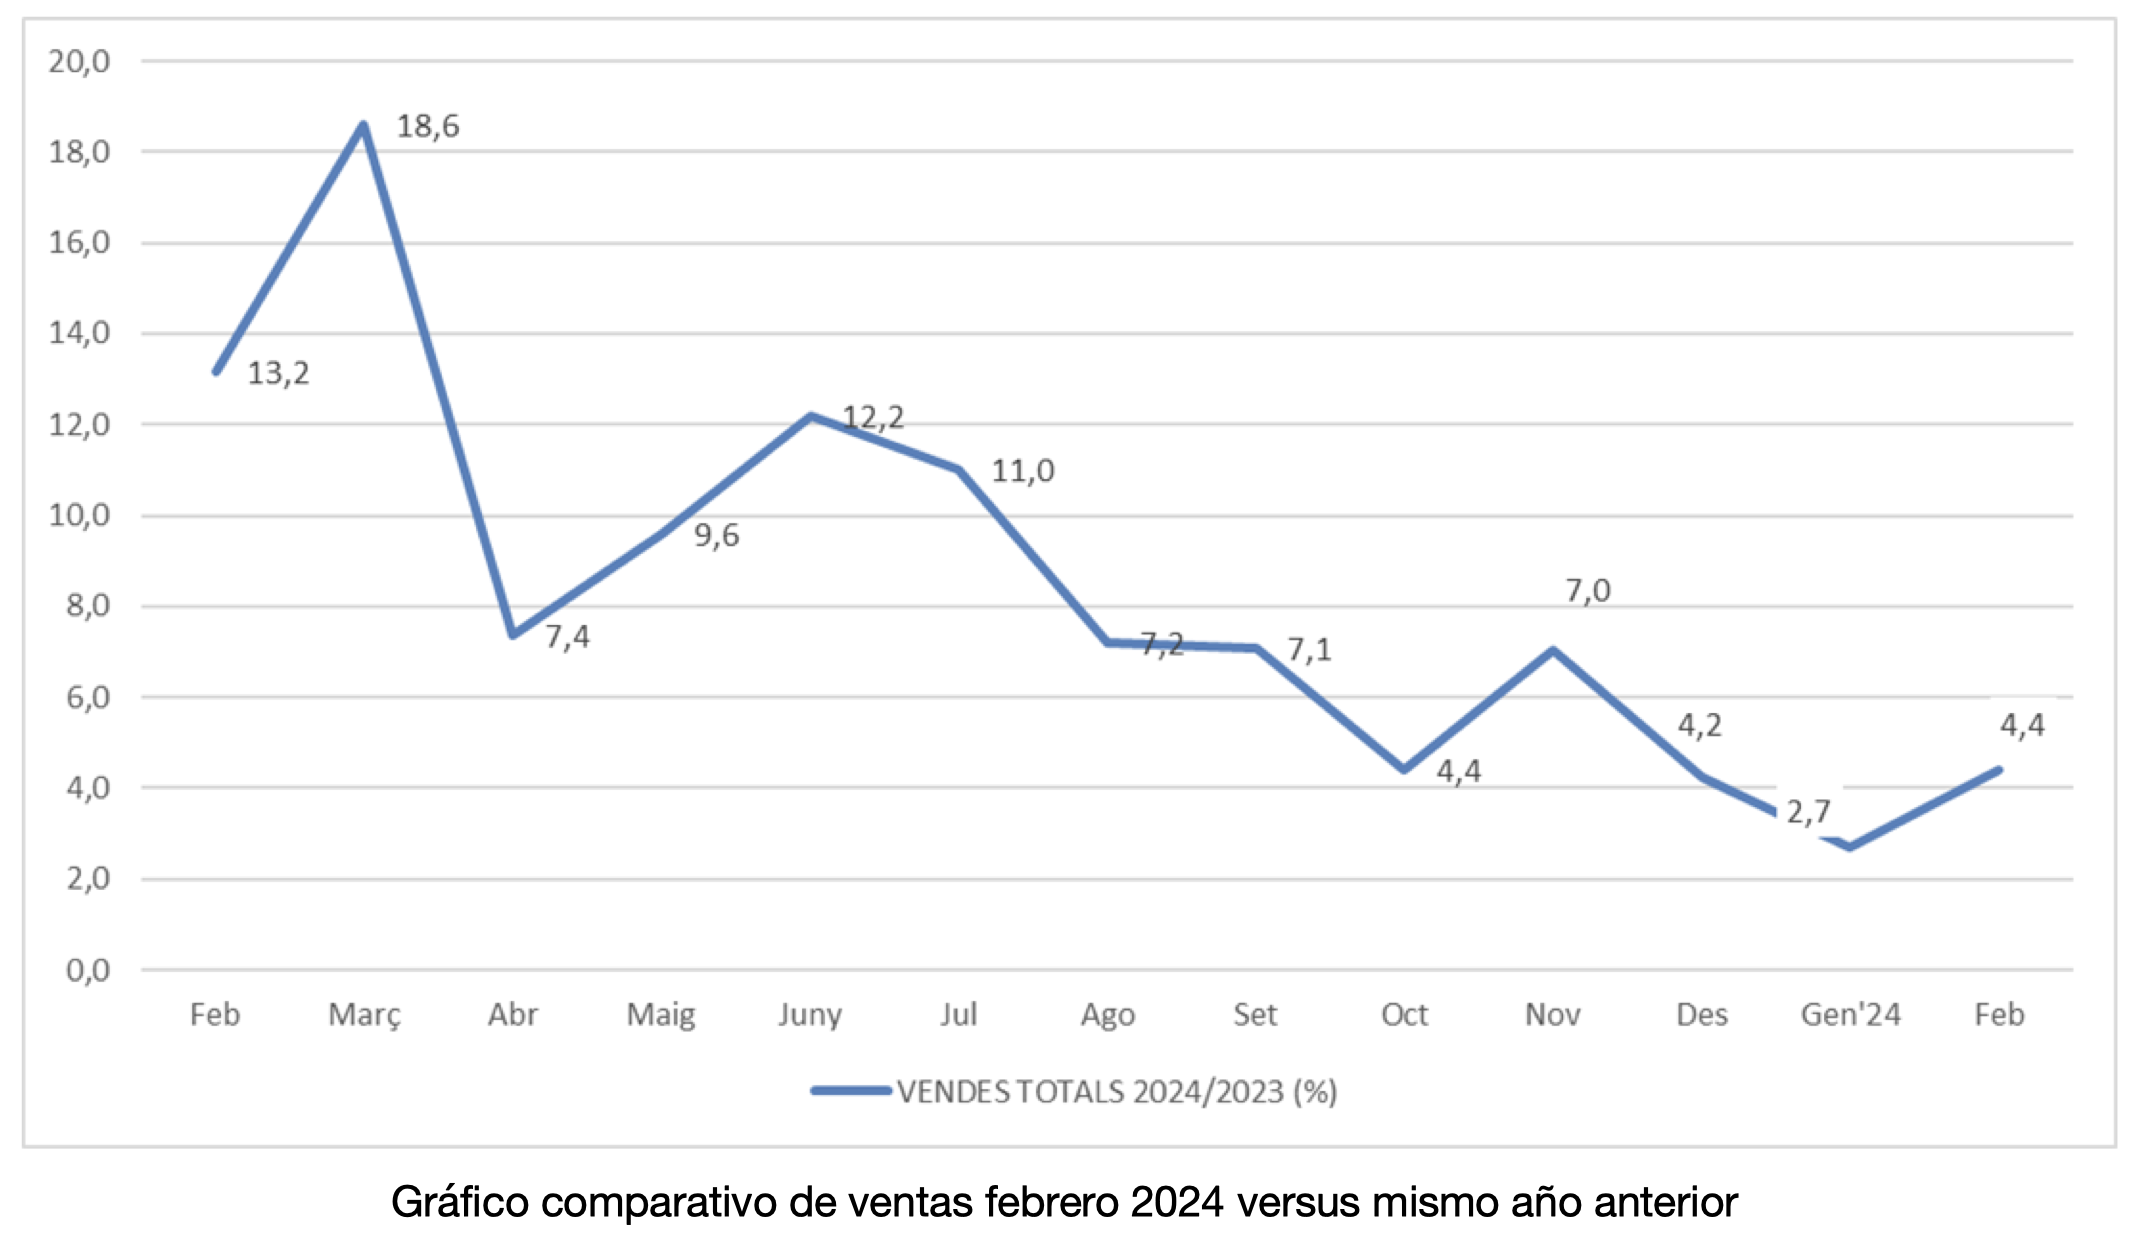 Los establecimientos adheridos a Comertia crecen un 4,4% en febrero, frente al mismo mes del año anterior